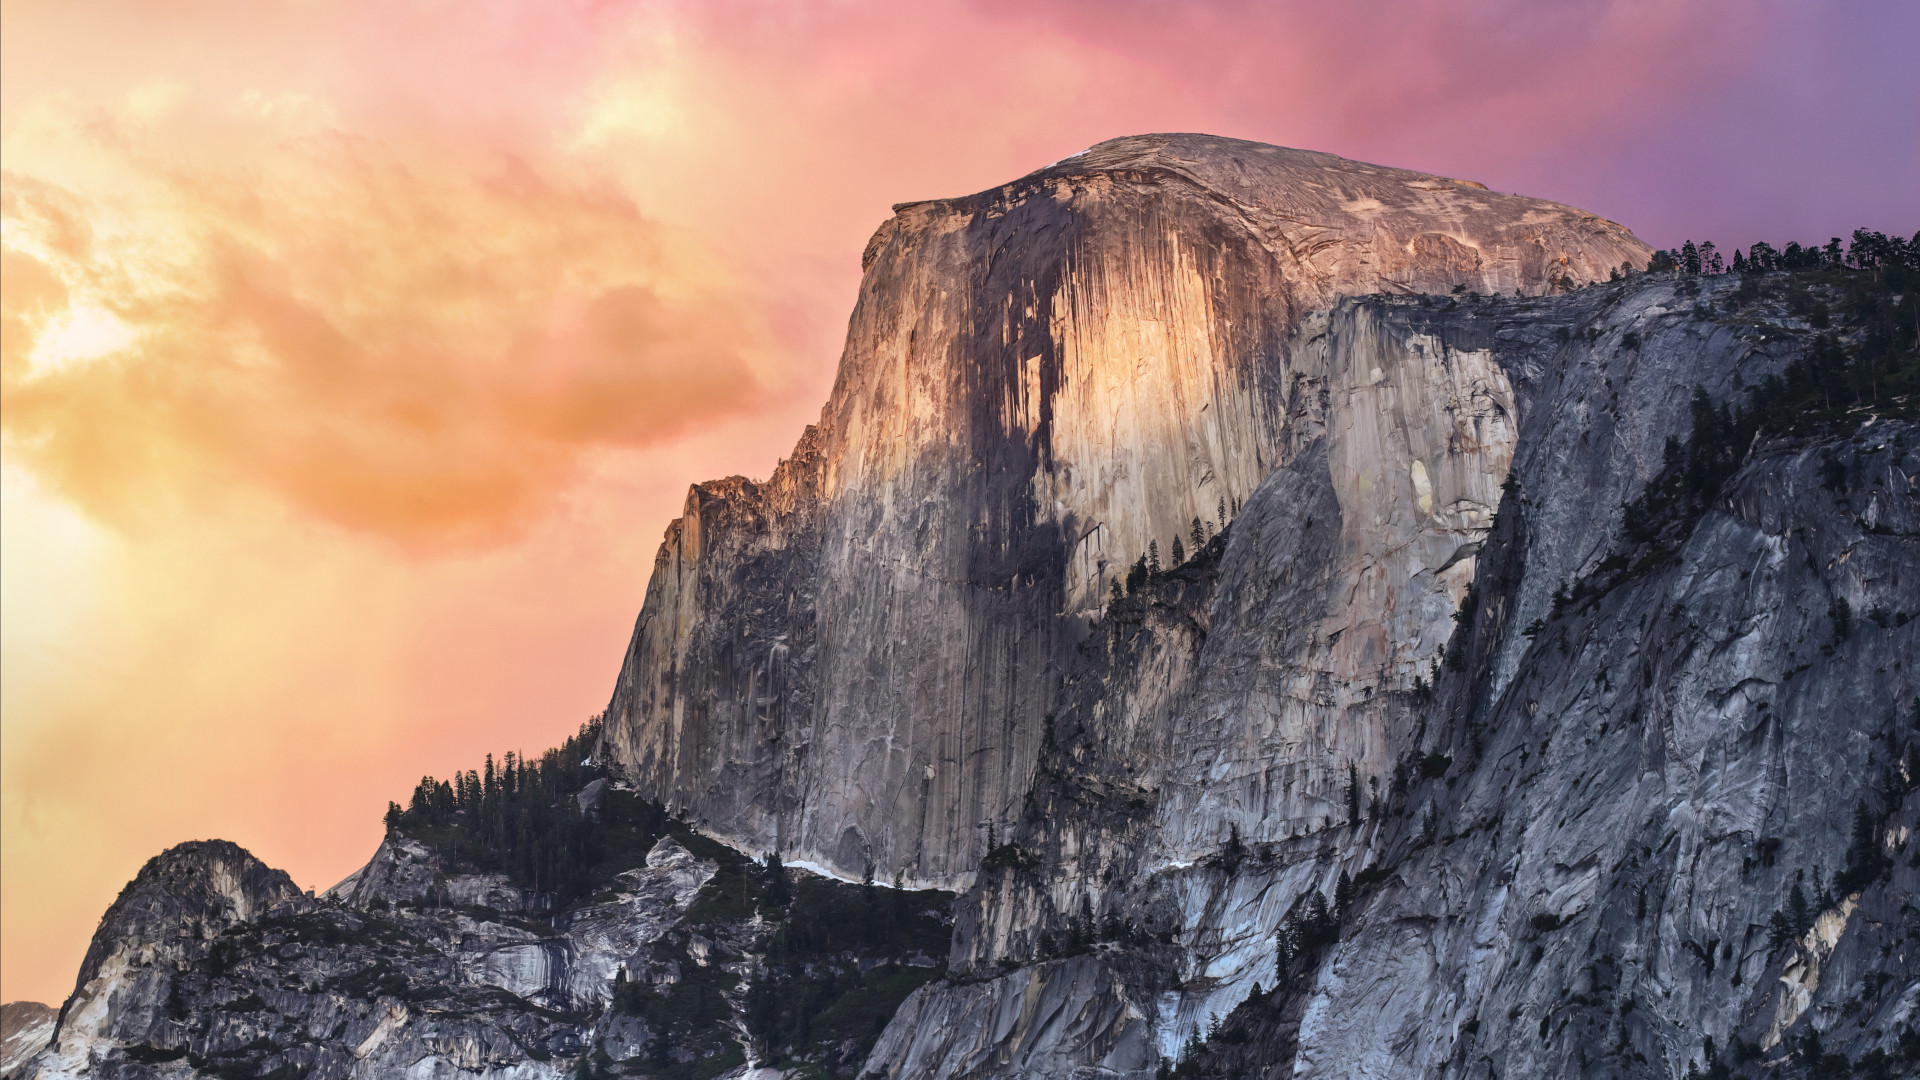 Hãy chiêm ngưỡng vẻ đẹp tuyệt đỉnh của Hình nền Yosemite với nền tảng đá hoang sơ, đọng nước biển, và tầm nhìn xa xa mê hồn. Điều này sẽ khiến bạn mong muốn đóng bộ phim khám phá thiên nhiên ngay lập tức.